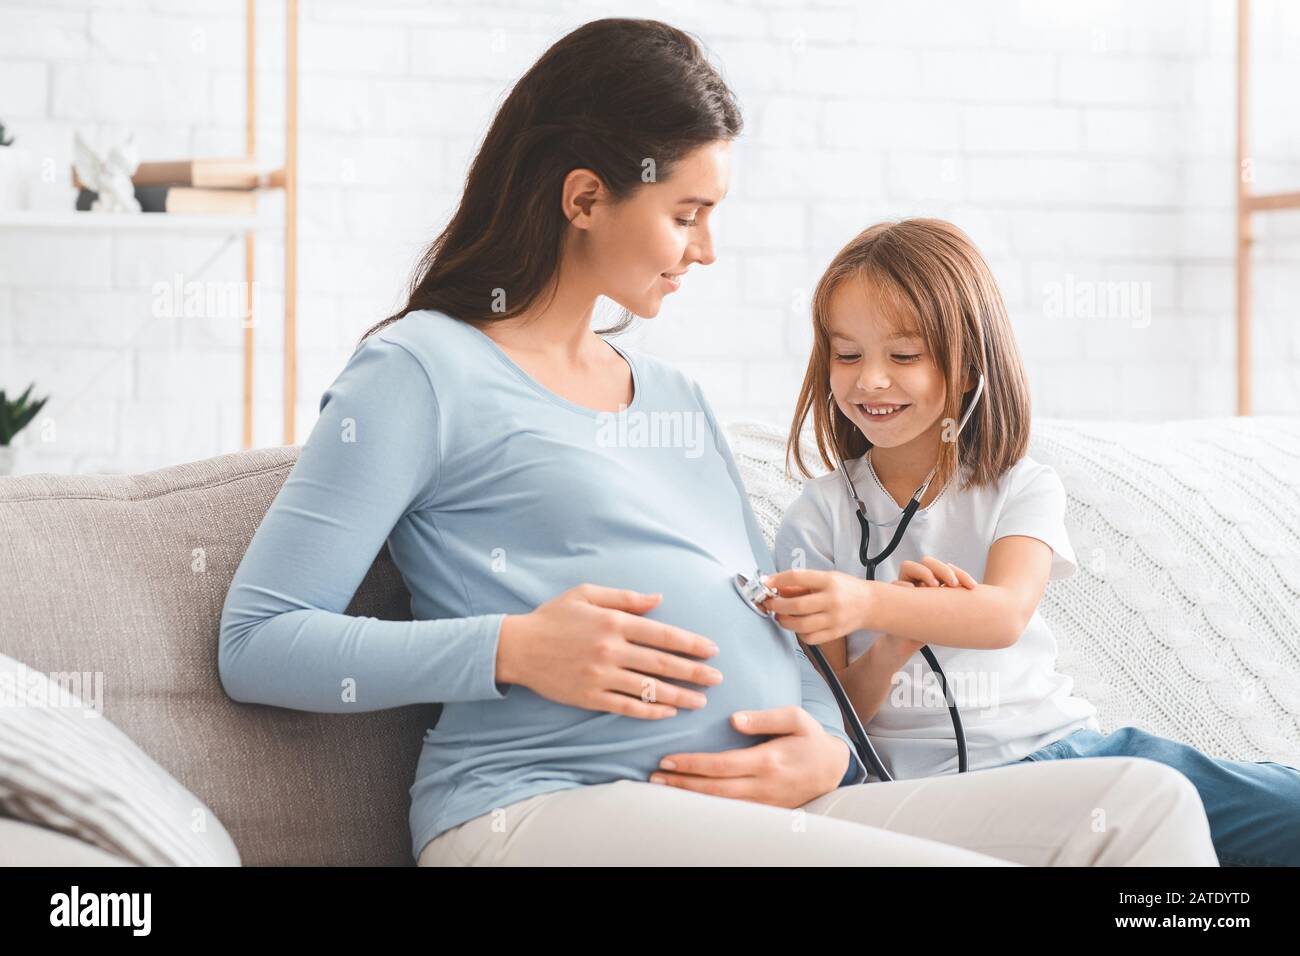 Kleines Mädchen, das Bauch ihrer schwangeren Mutter durch Stethoskop hört Stockfoto